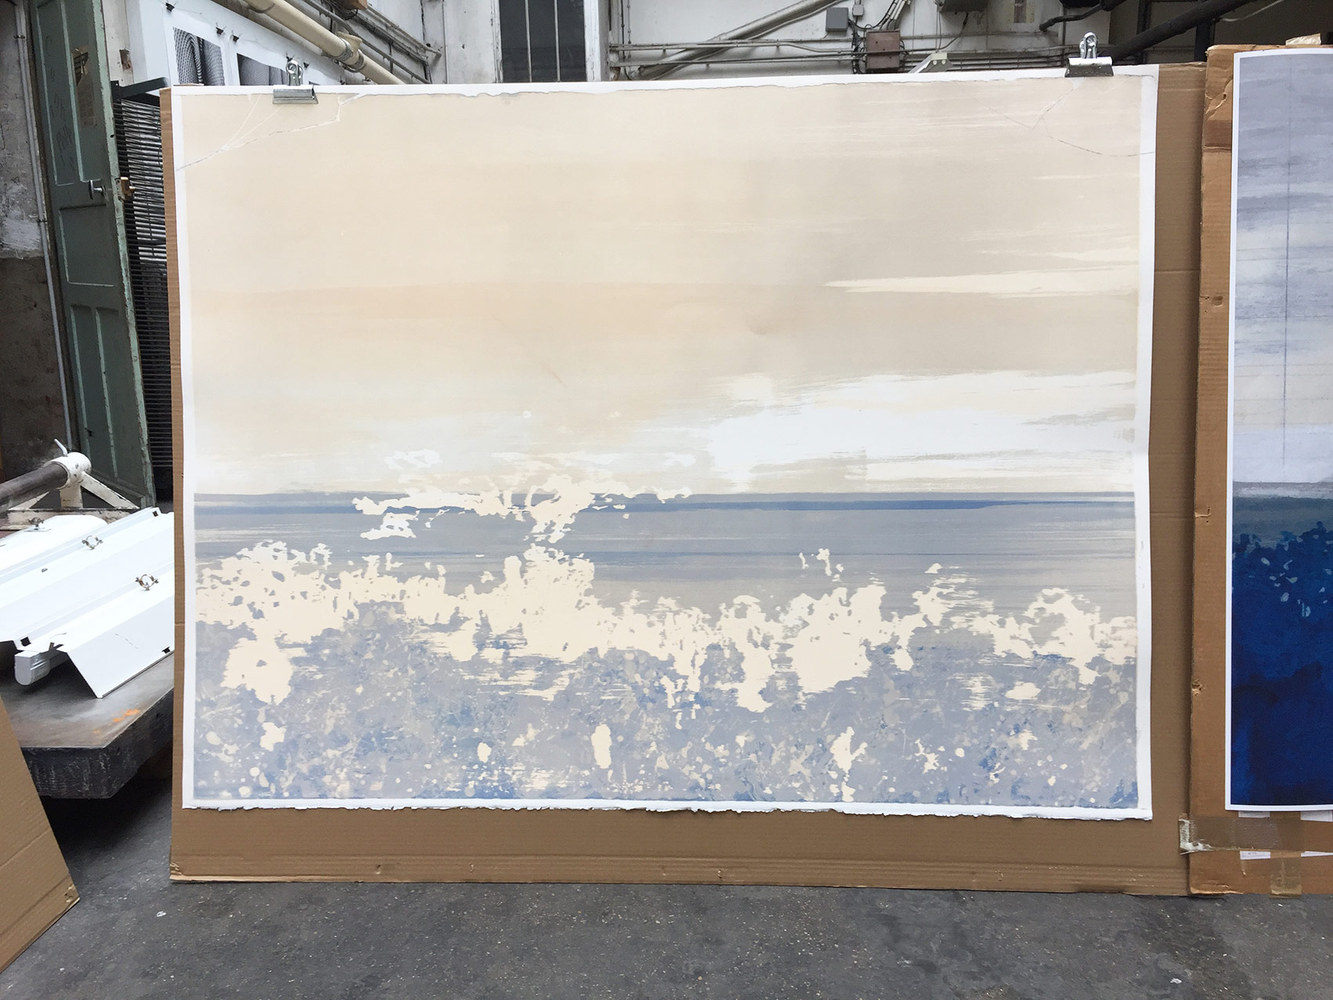 Emmanuel  GUIBERT - Cilento, 2018 -  Une oeuvre qui se construit lentement. Les ciels sont placés, le paysage au loin commence à apparaître